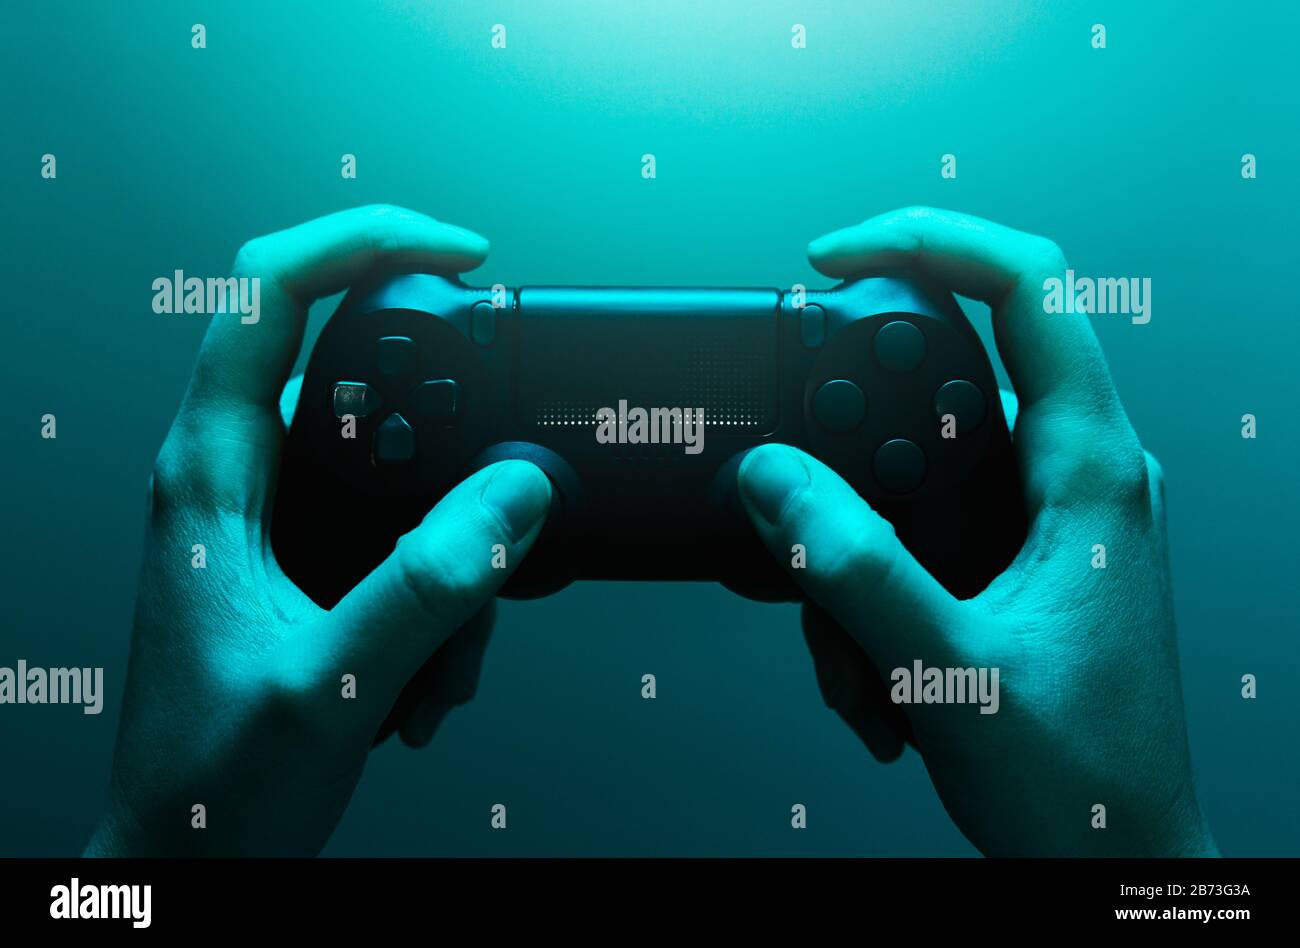 Stock-Foto der Hände, die ein schwarzes Gamepad mit blauem Licht halten Stockfoto